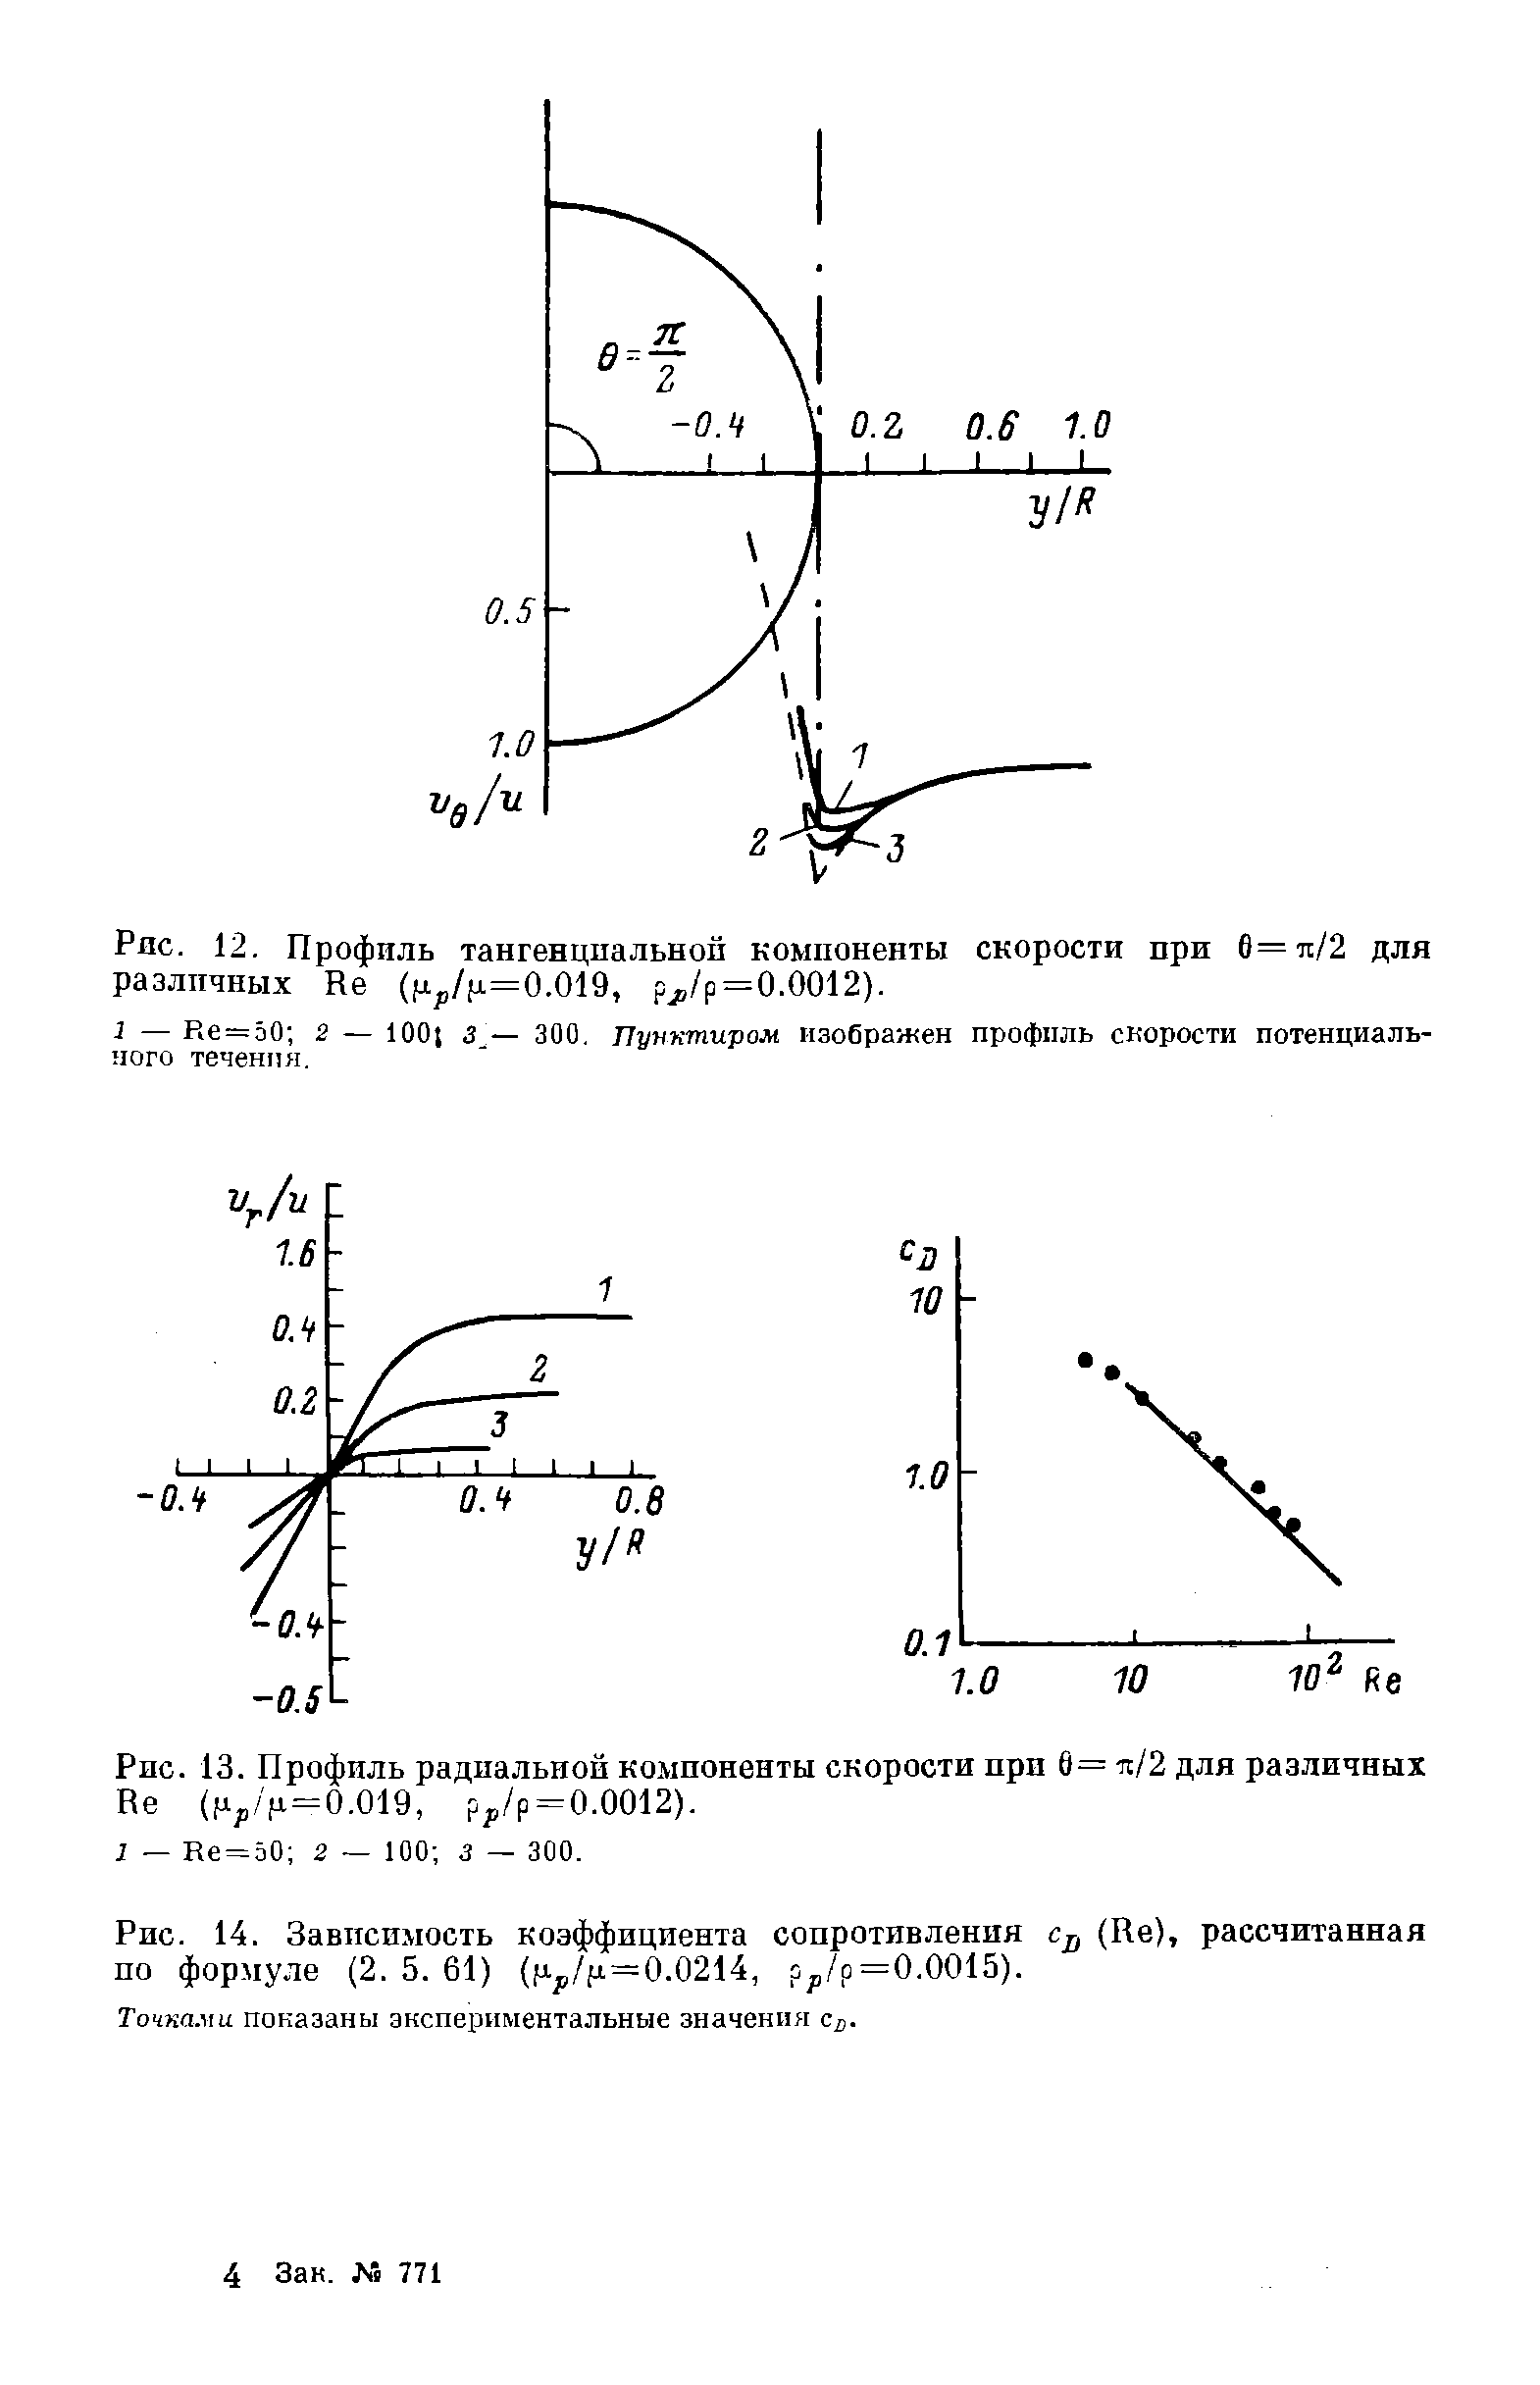 Рис. 13. Профиль радиальной компоненты скорости при 6= и/2 для различных Не (ц /(а=0.019, ру/р = 0.0012).
